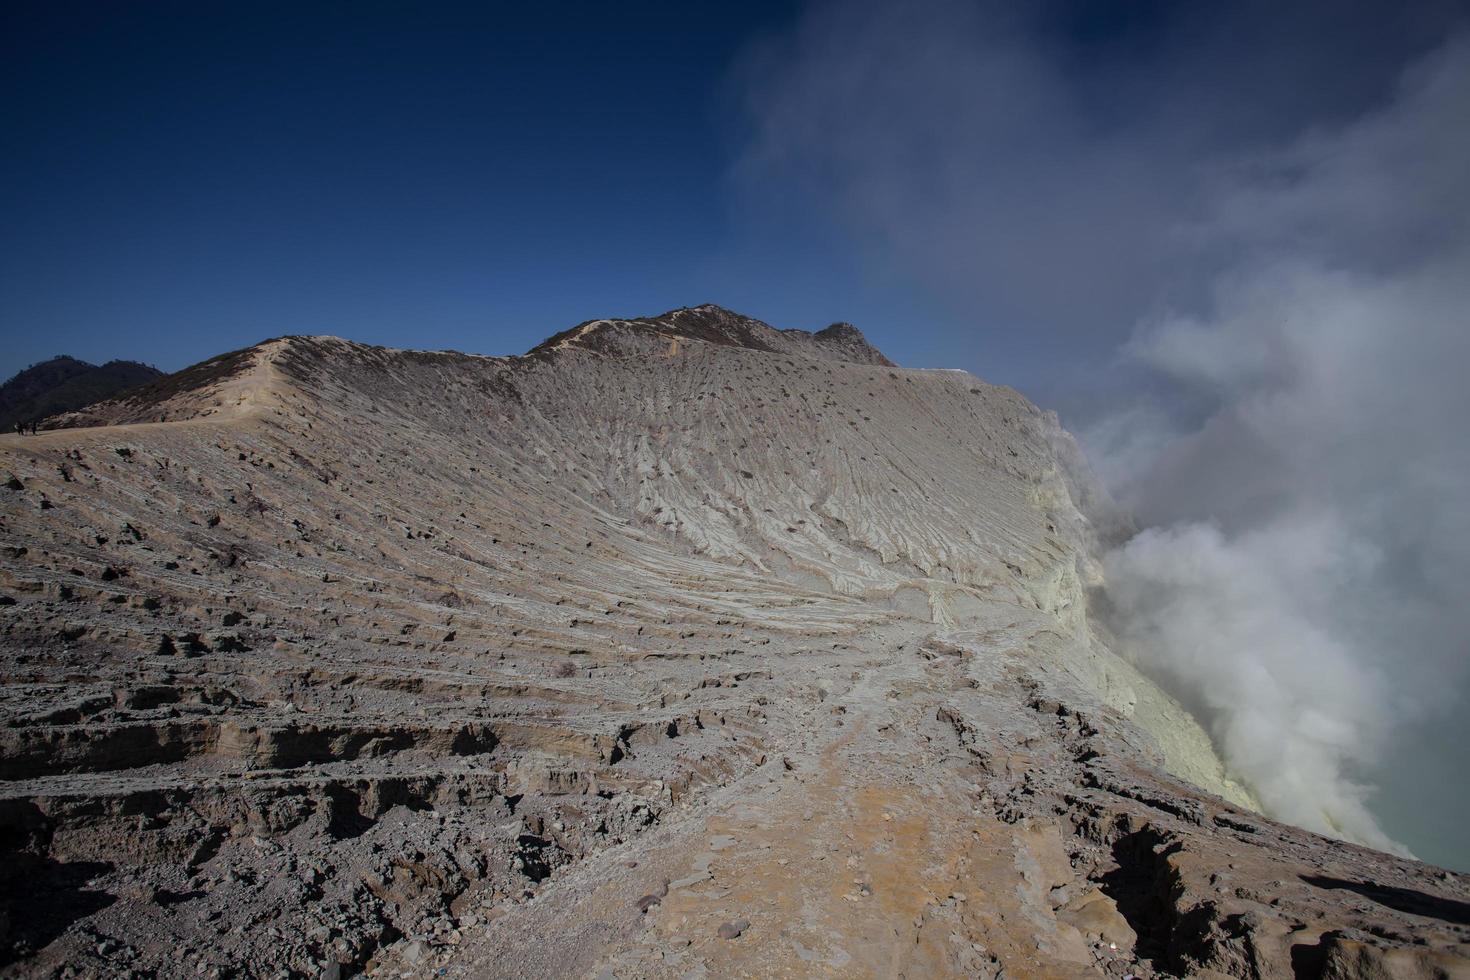 Sulfur mine with workers in Kawah Ijen, Java, Indonesia photo